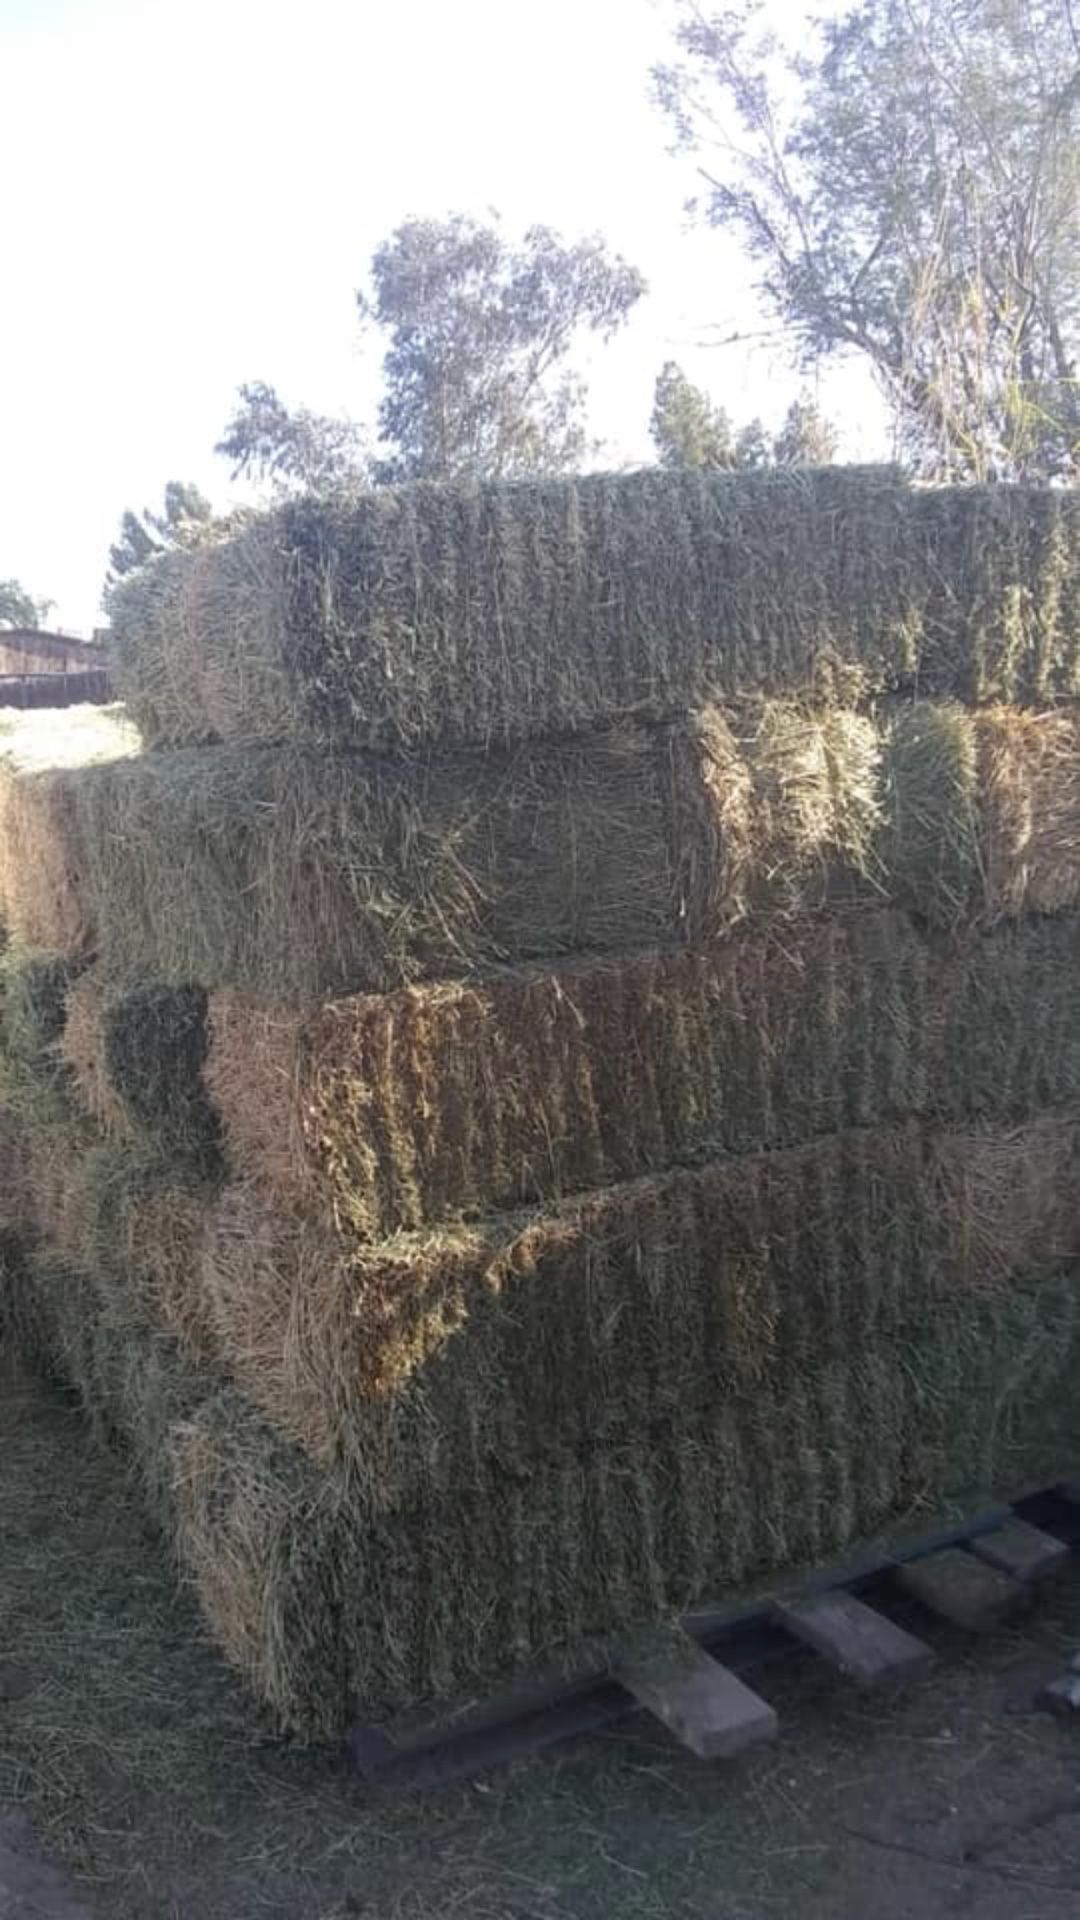 Hay for sale / venta de alfalfa